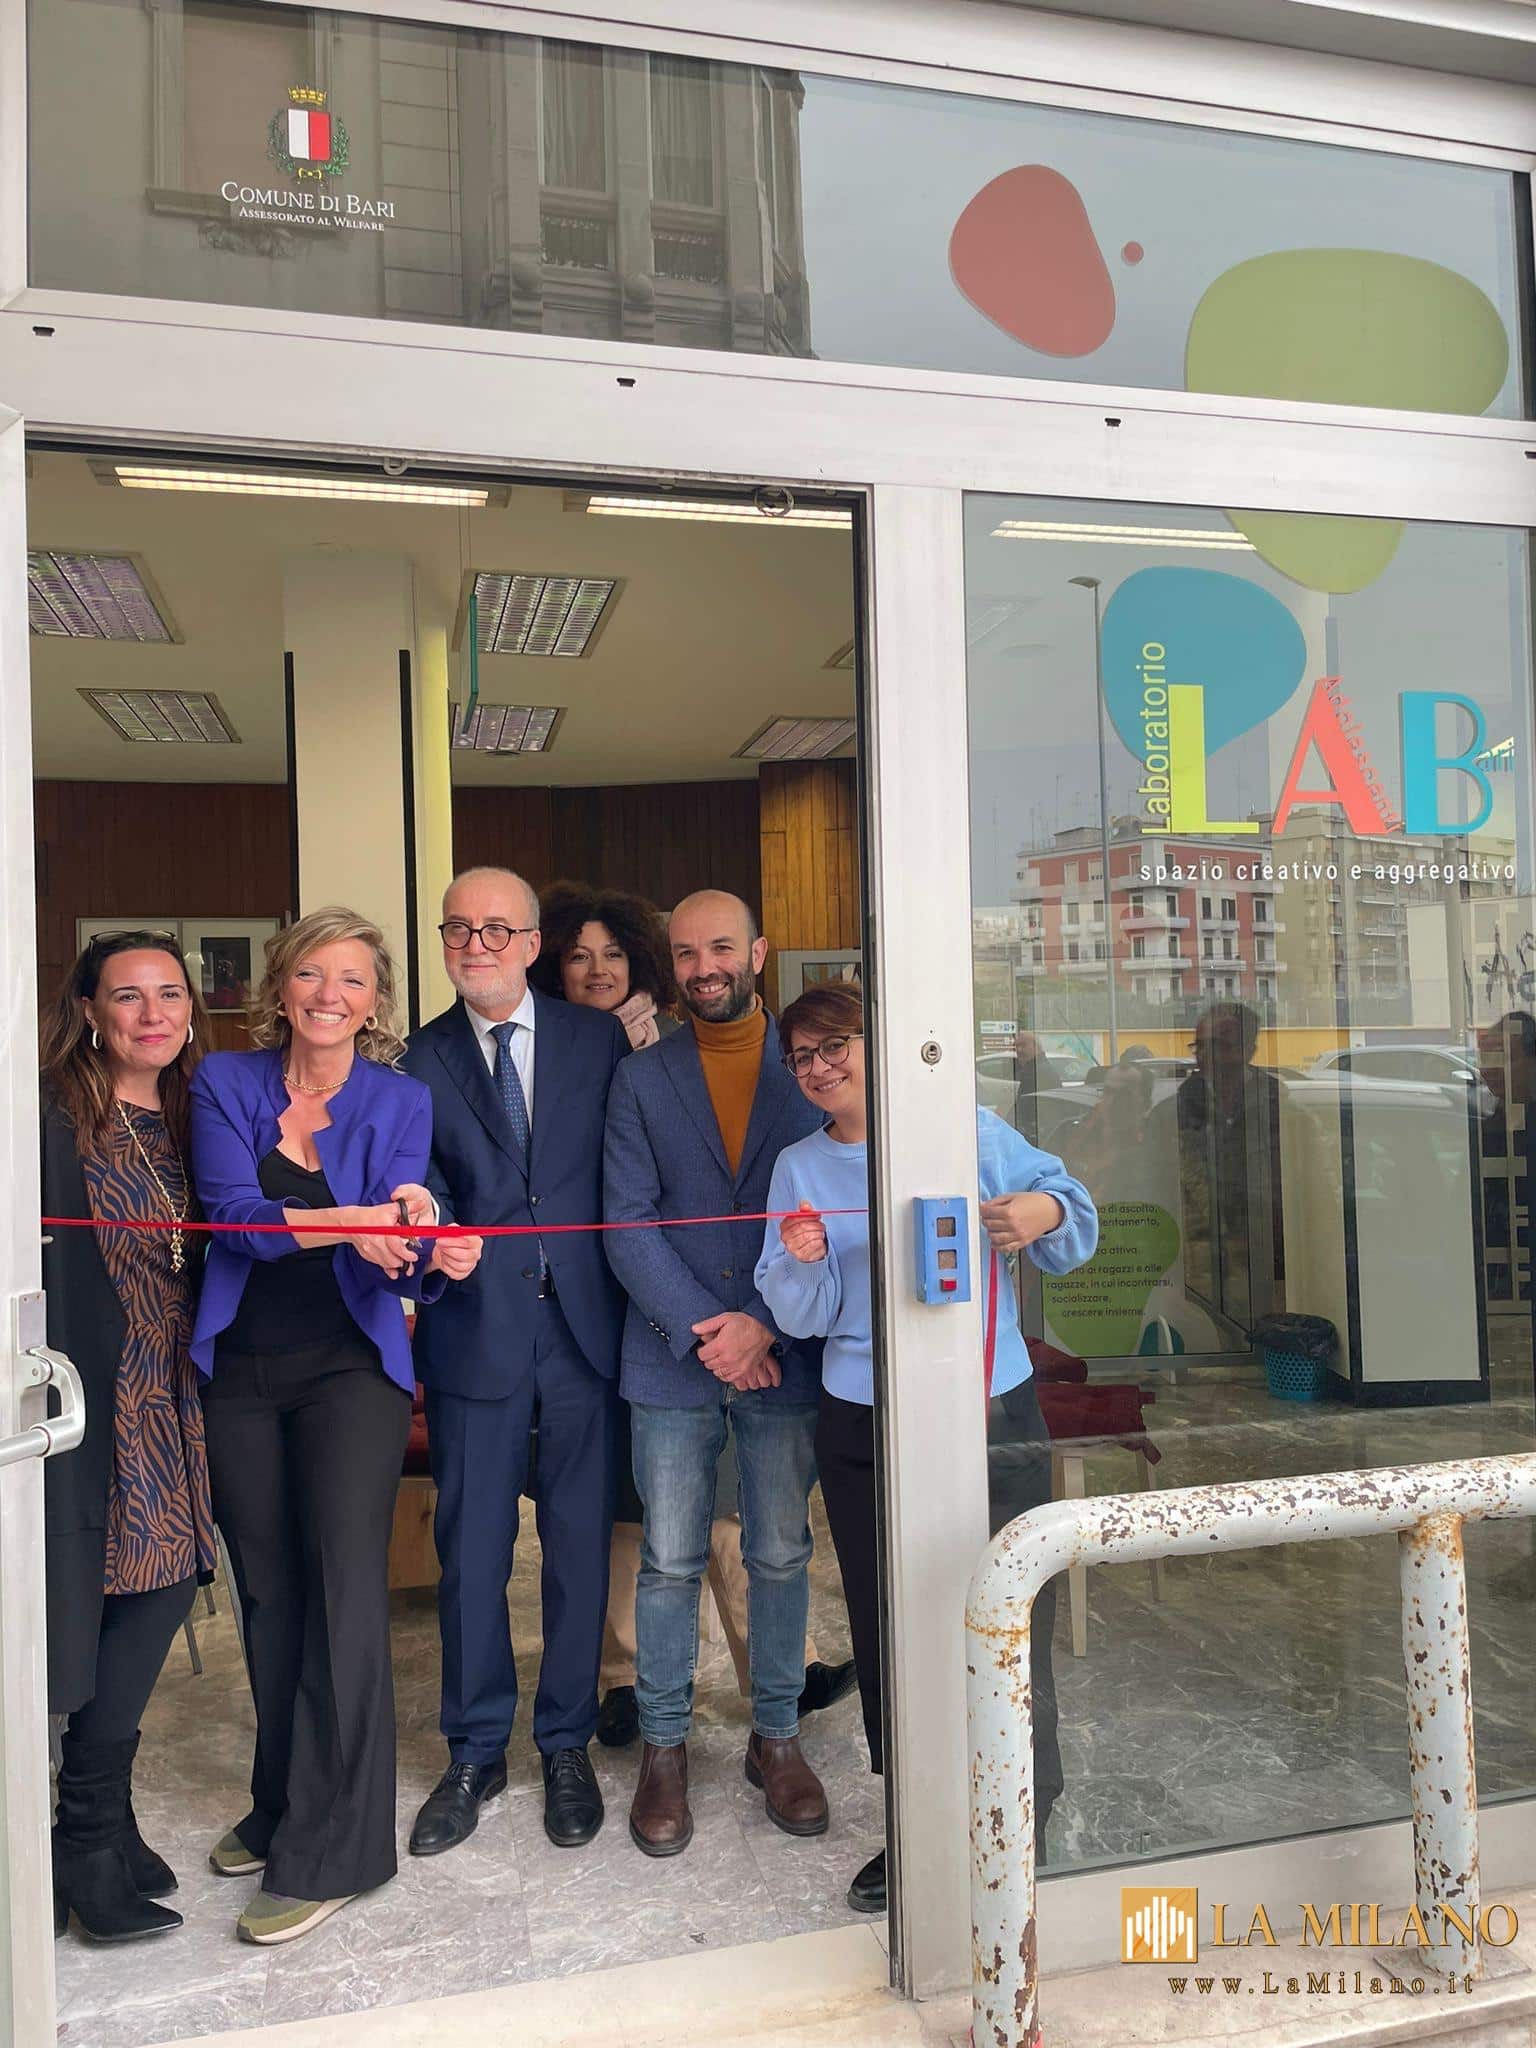 Bari: inaugurato LAB - Laboratorio Adolescenti Bari, promosso dall'assessorato comunale al welfare e da UniCredit